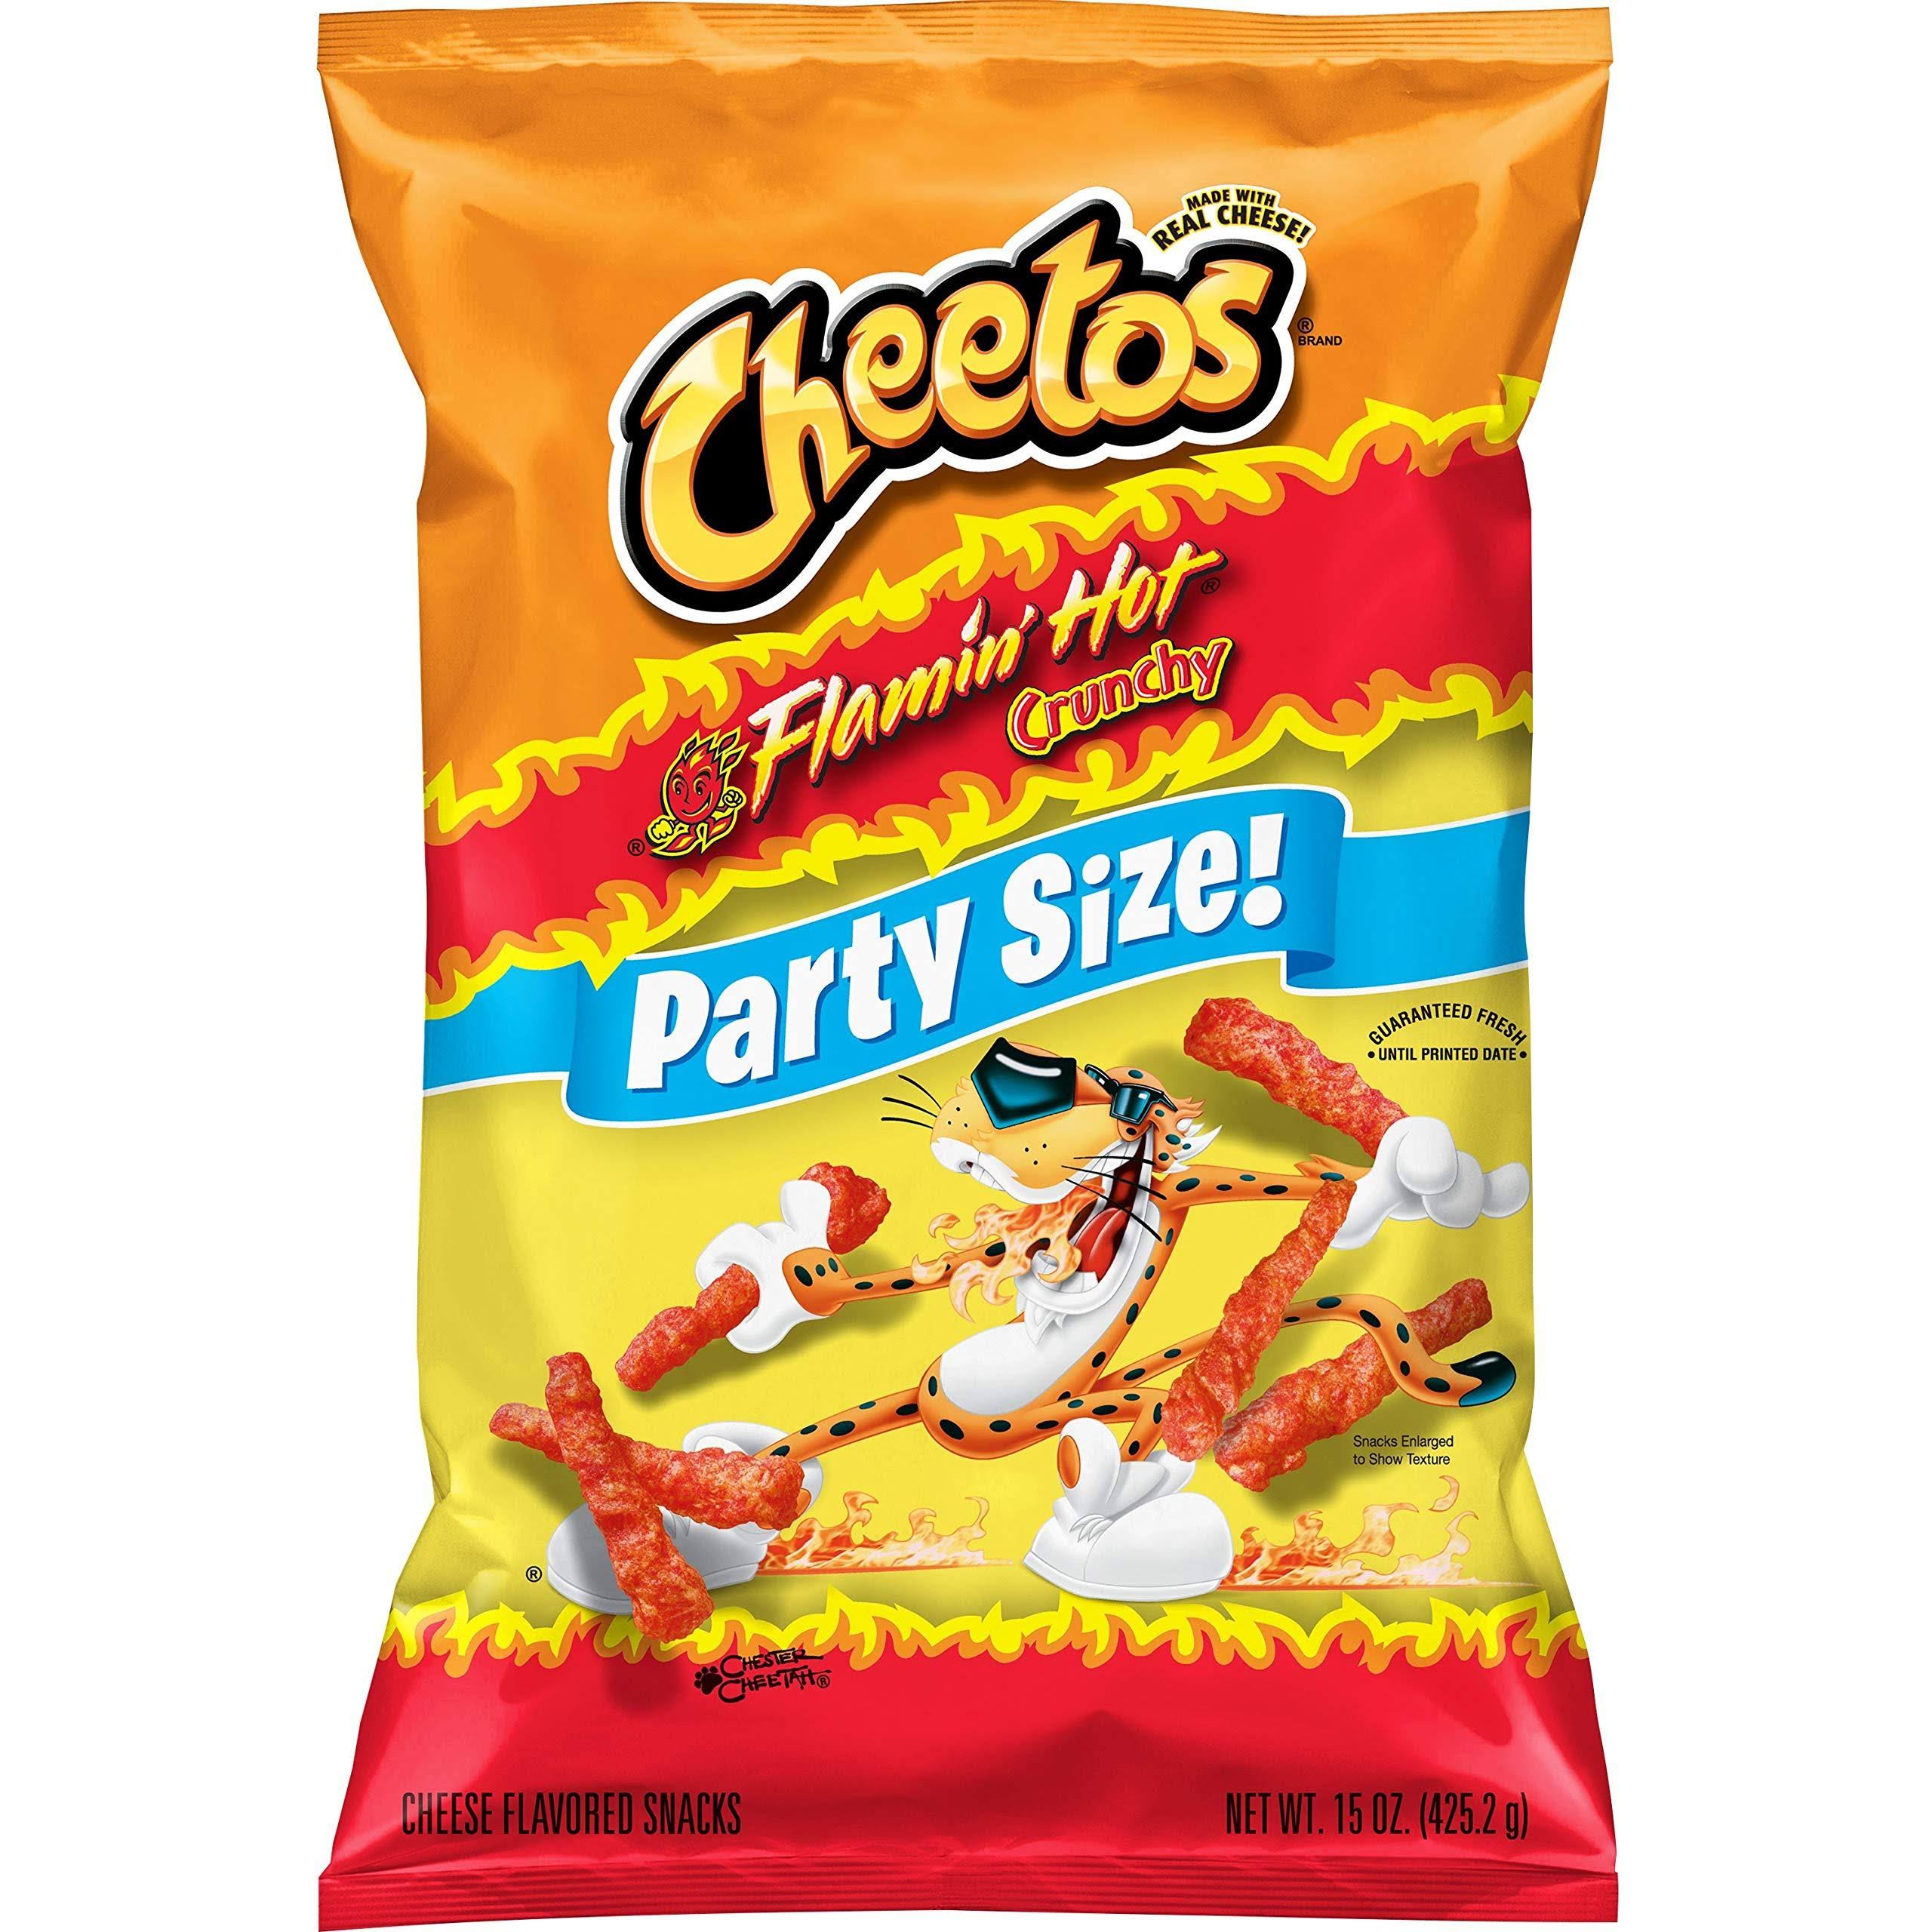 Cheetos Crunchy Flamin' Hot, 15oz Party Size Bag